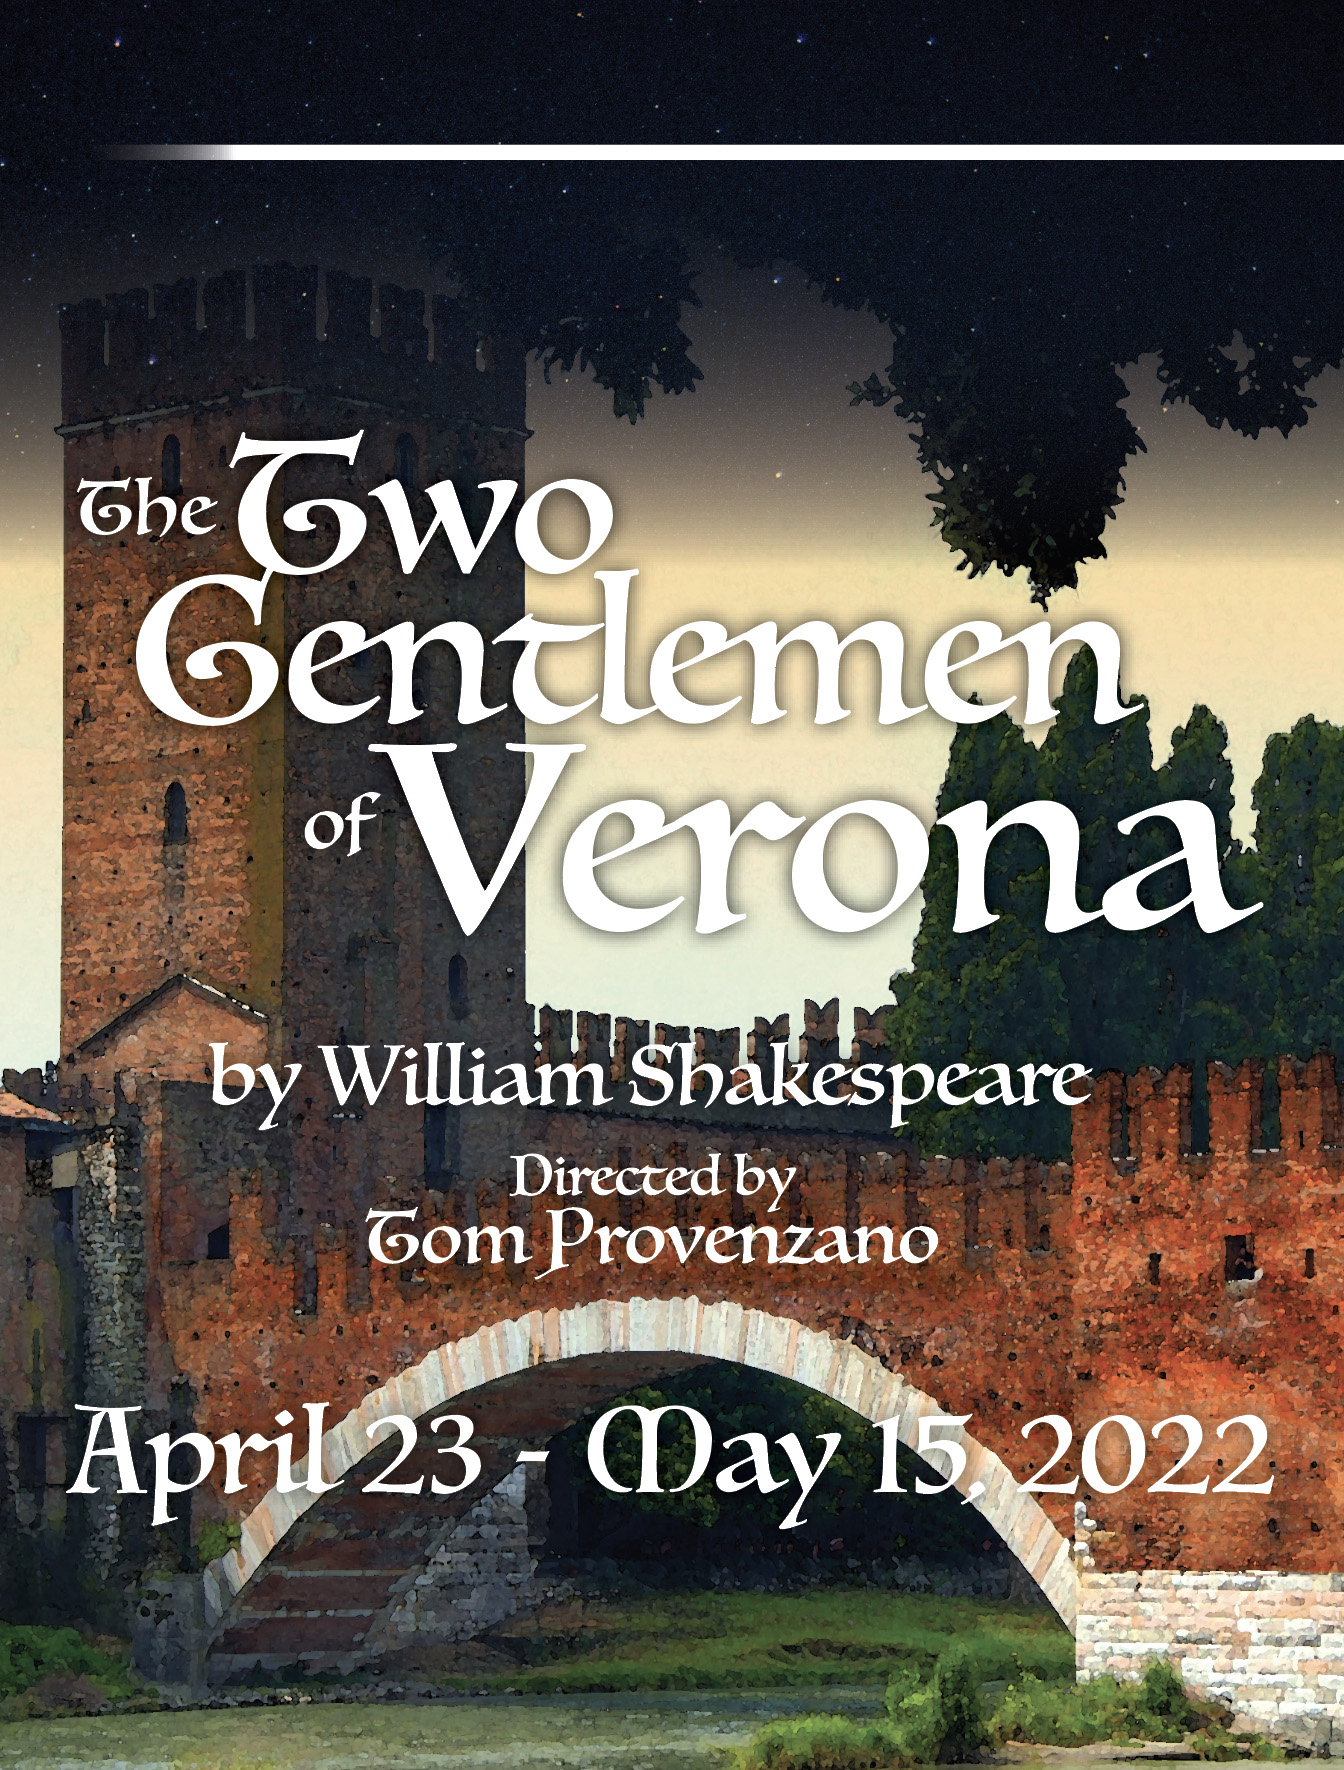 William Shakespeare's The Two Gentlemen of Verona